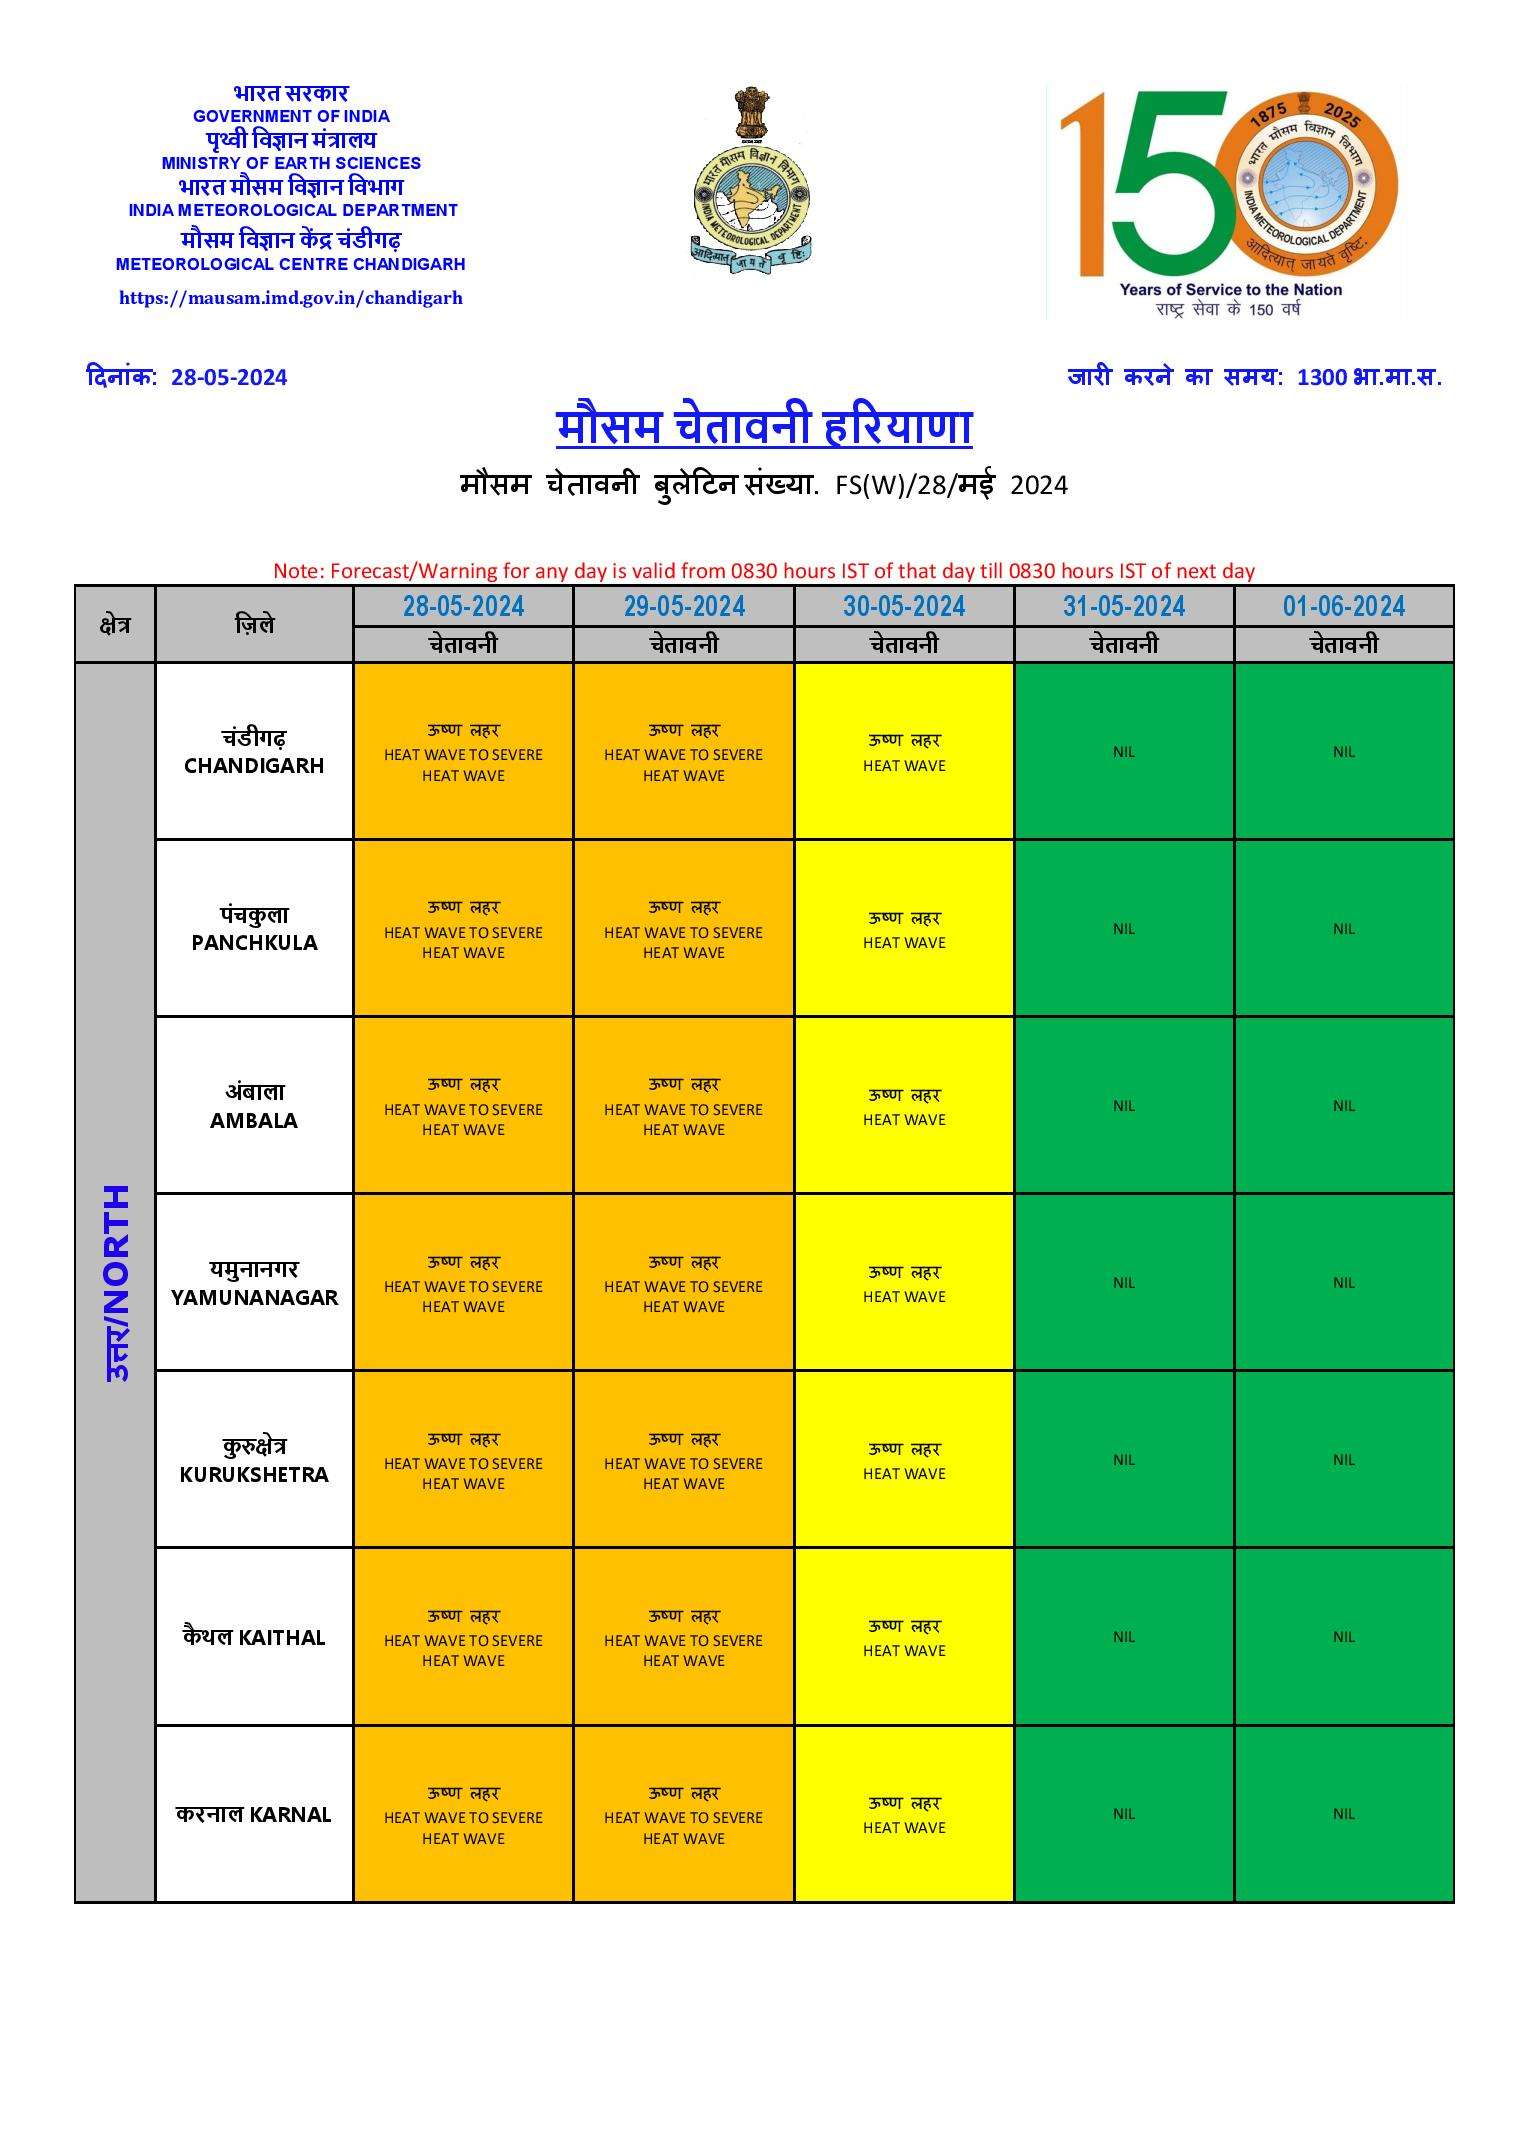  Haryana Weather Update: हरियाणा के 8 जिलों में रेड अलर्ट, 7 जिलों में येलो अलर्ट, देखें मौसम जानकारी